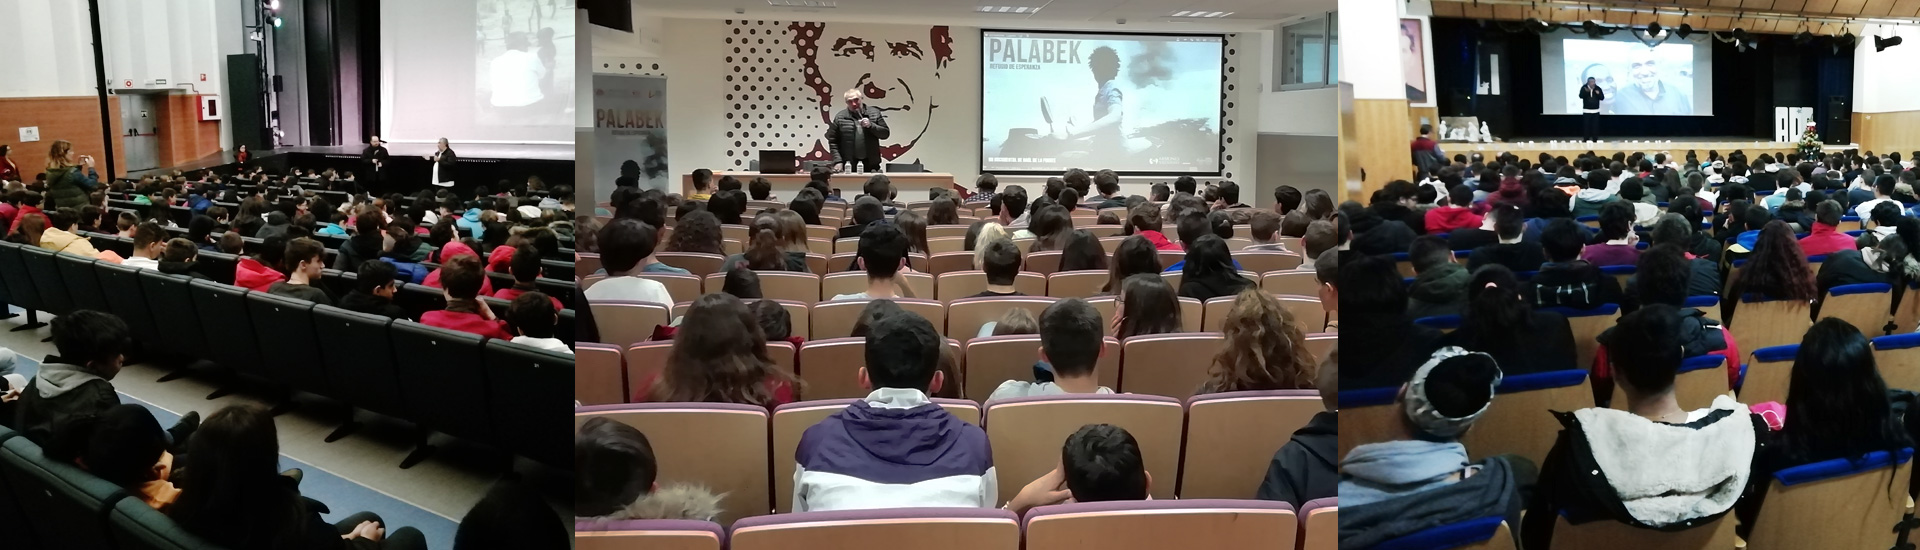 El documental 'Palabek' conmueve a los alumnos de colegios salesianos